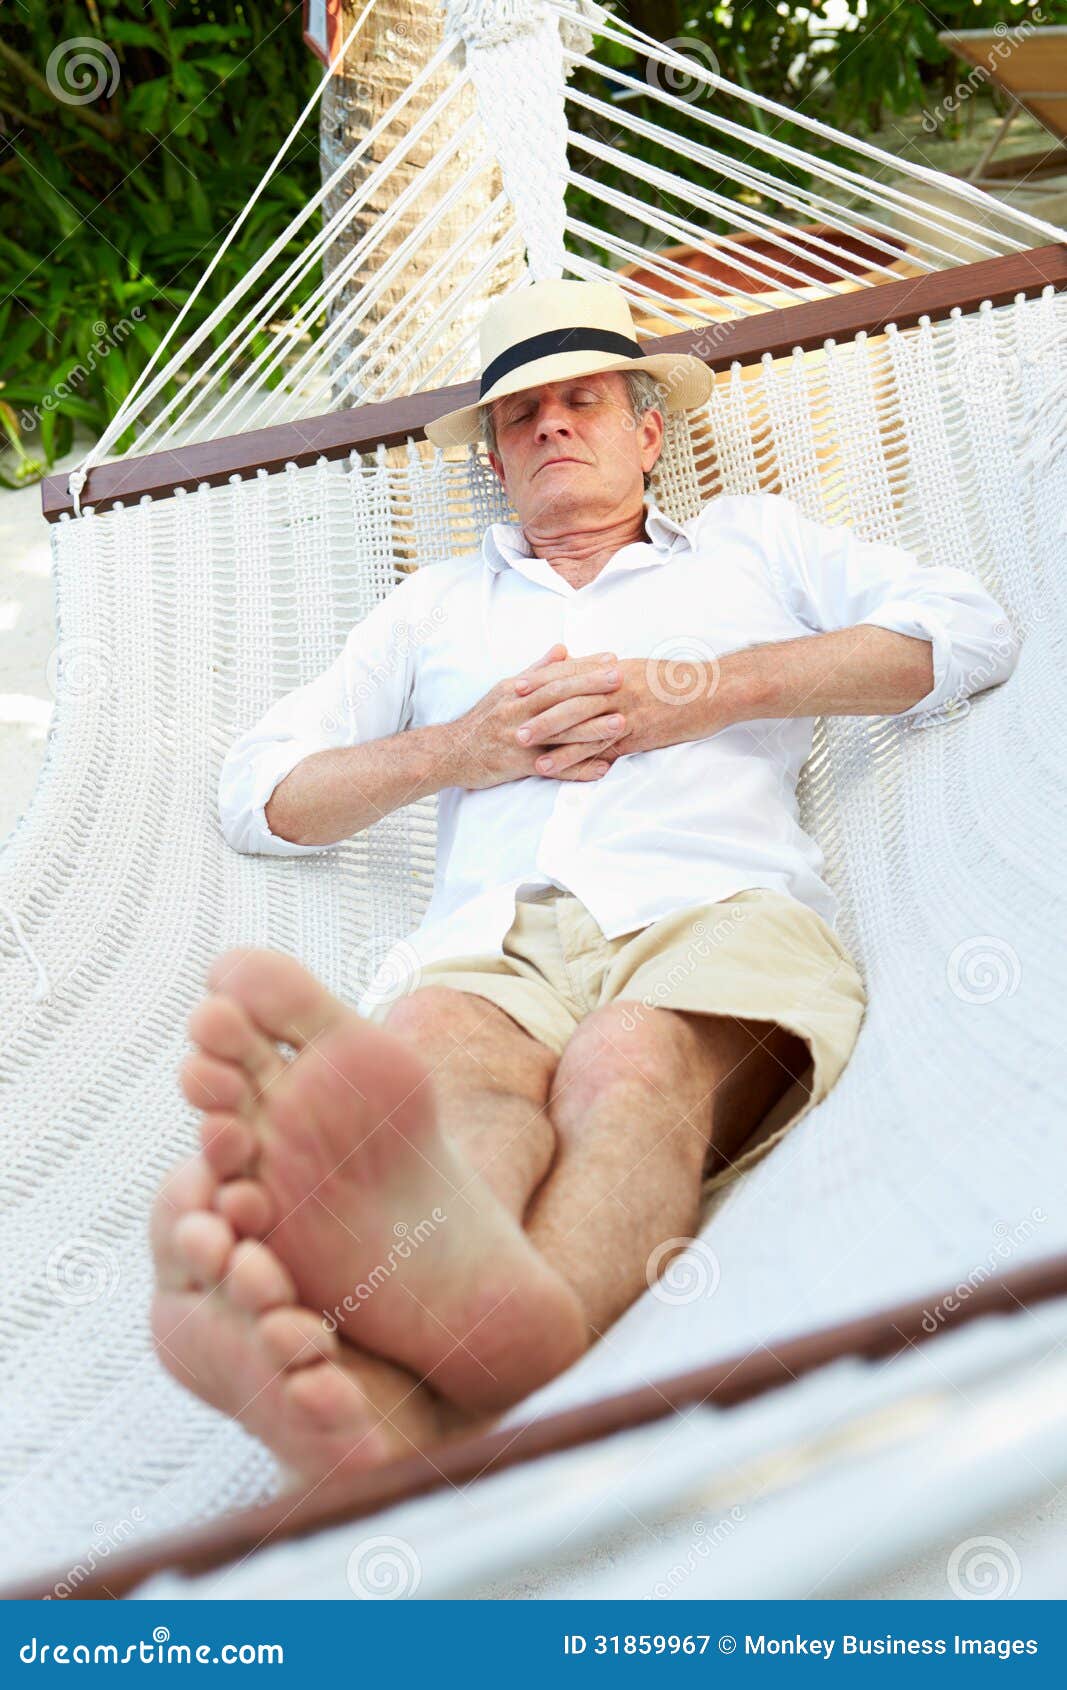 Пока спал на пляже. Мужчина в гамаке. Человек отдыхает в гамаке. Мужчина на гамаке босиком. Человек в гамаке на пляже.